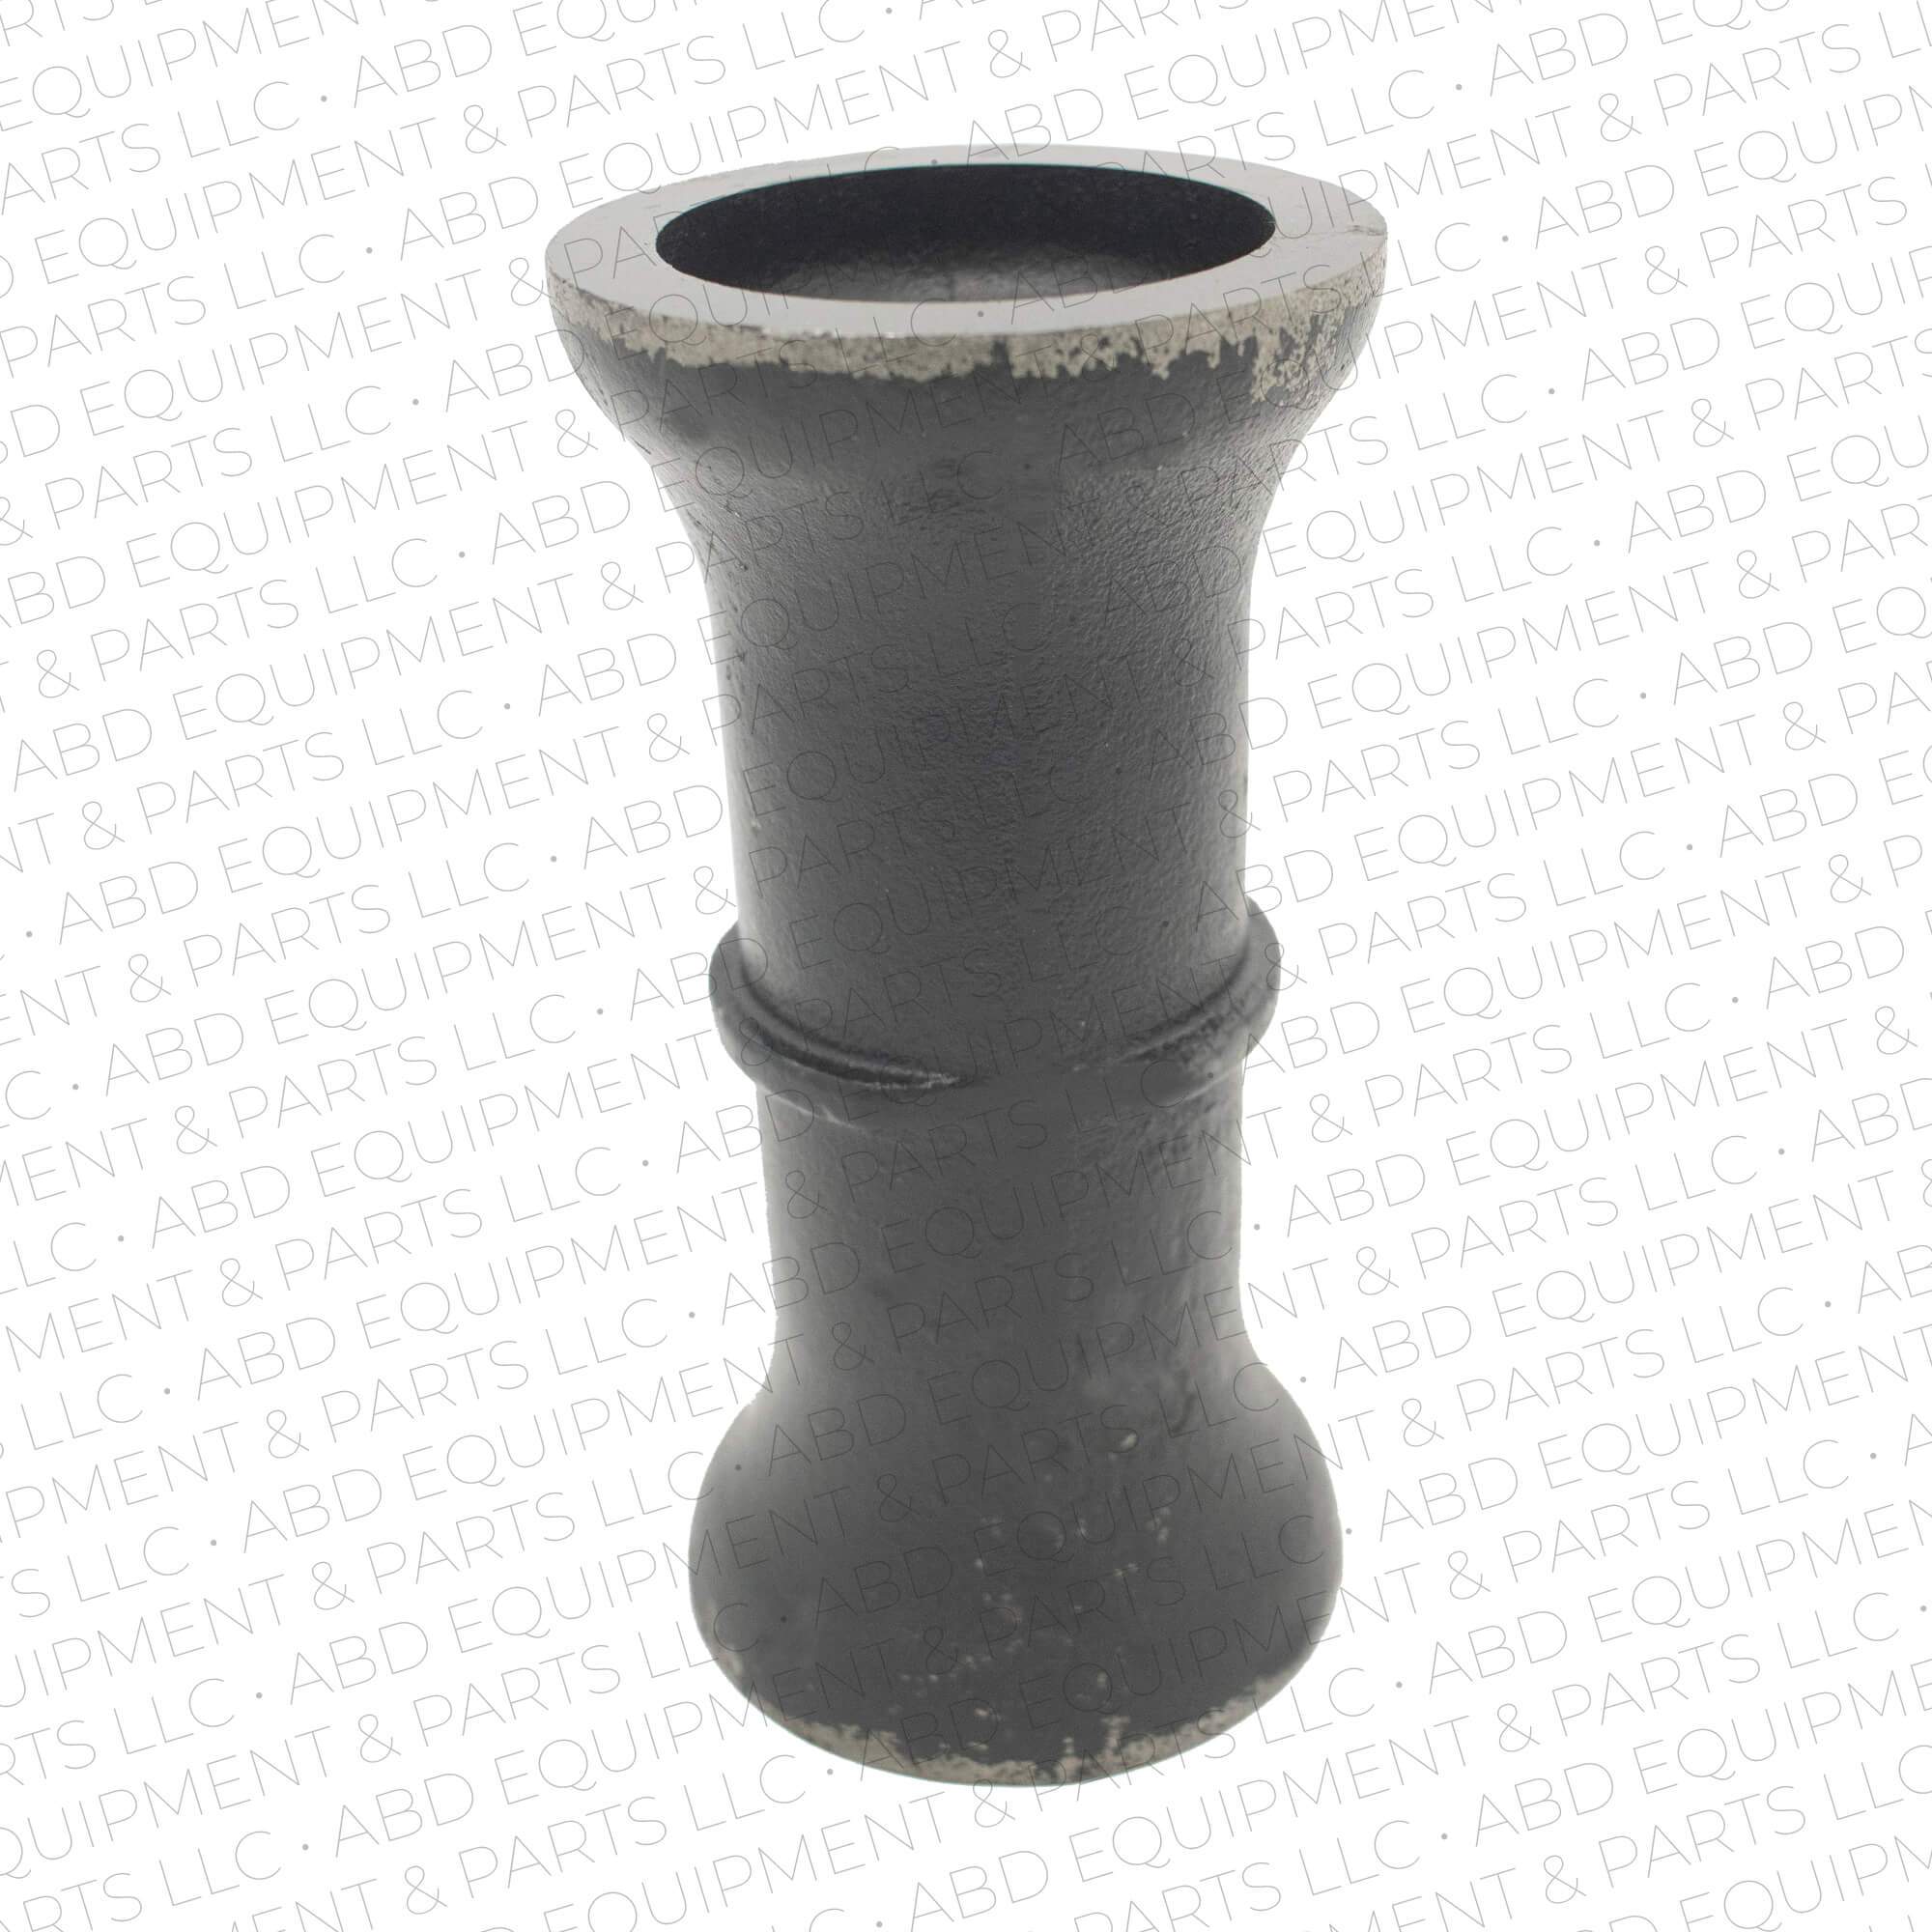 Disc Harrow 9 Inch Spool for 1.5 inch (1 1/2 inch) Axle - Abd Equipment & Parts LLC